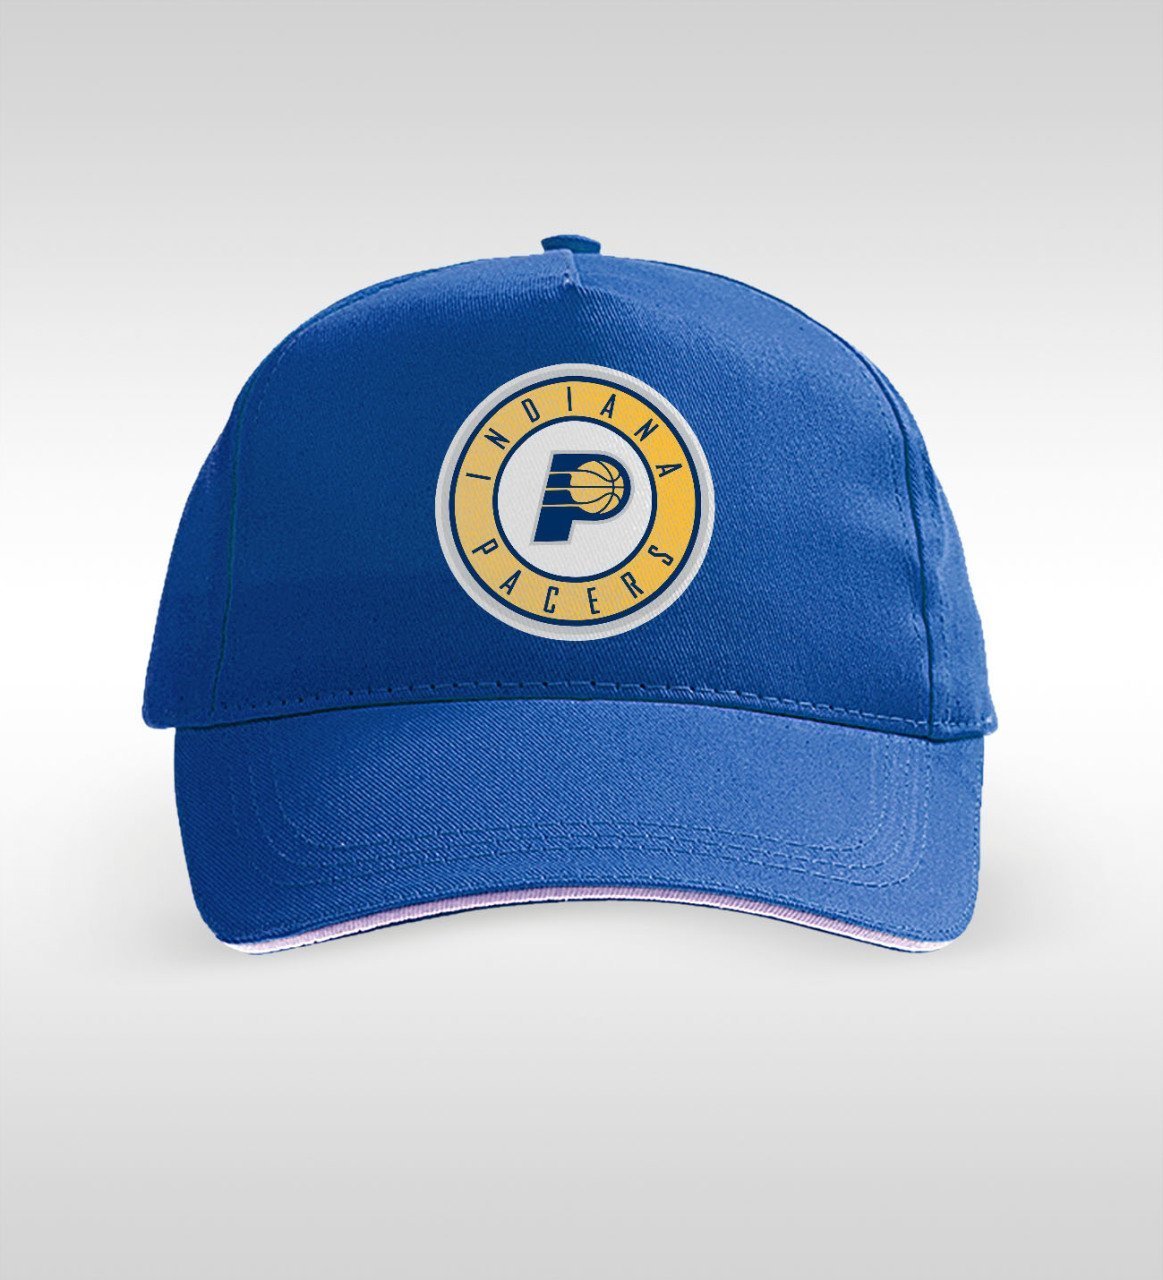 Indiana Pacers Cotton Lacivert Şapka